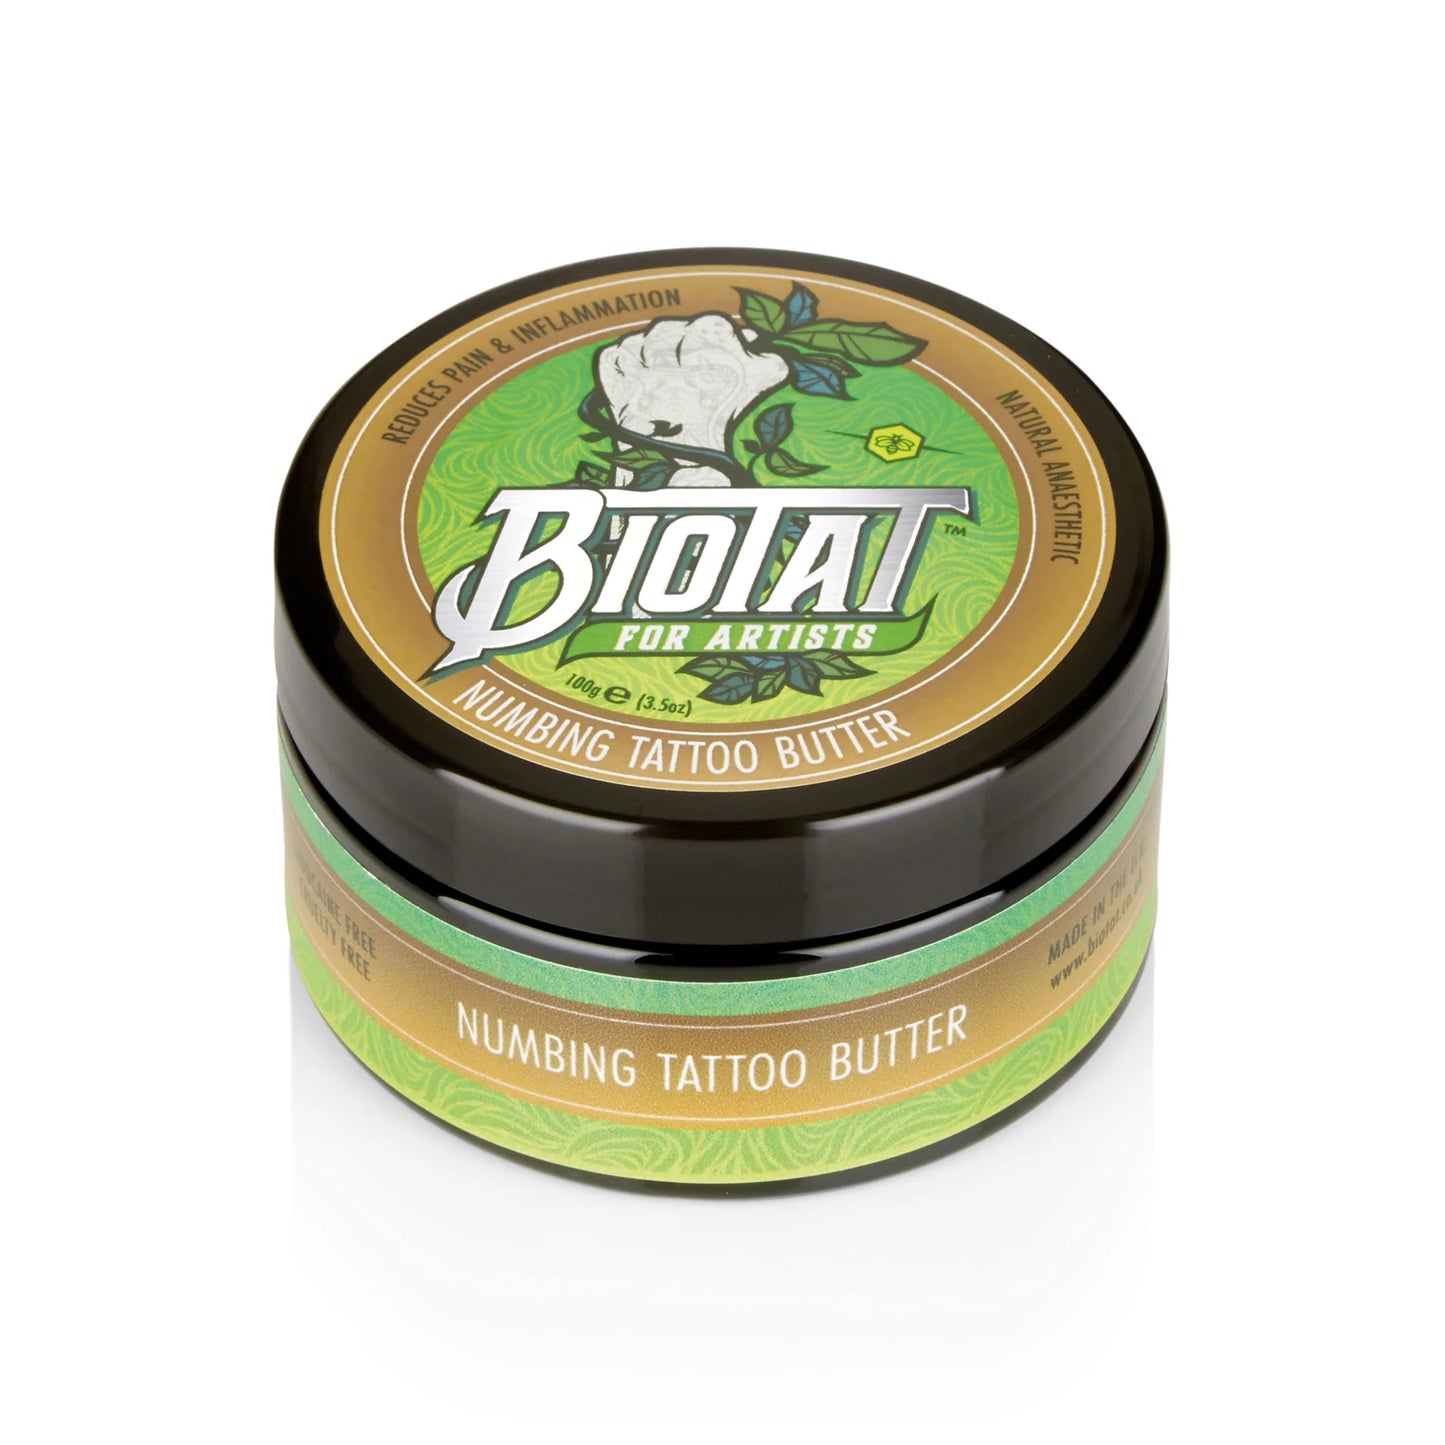 Biotat Natural Numbing Tattoo Butter 100g - mmtattoo supplies